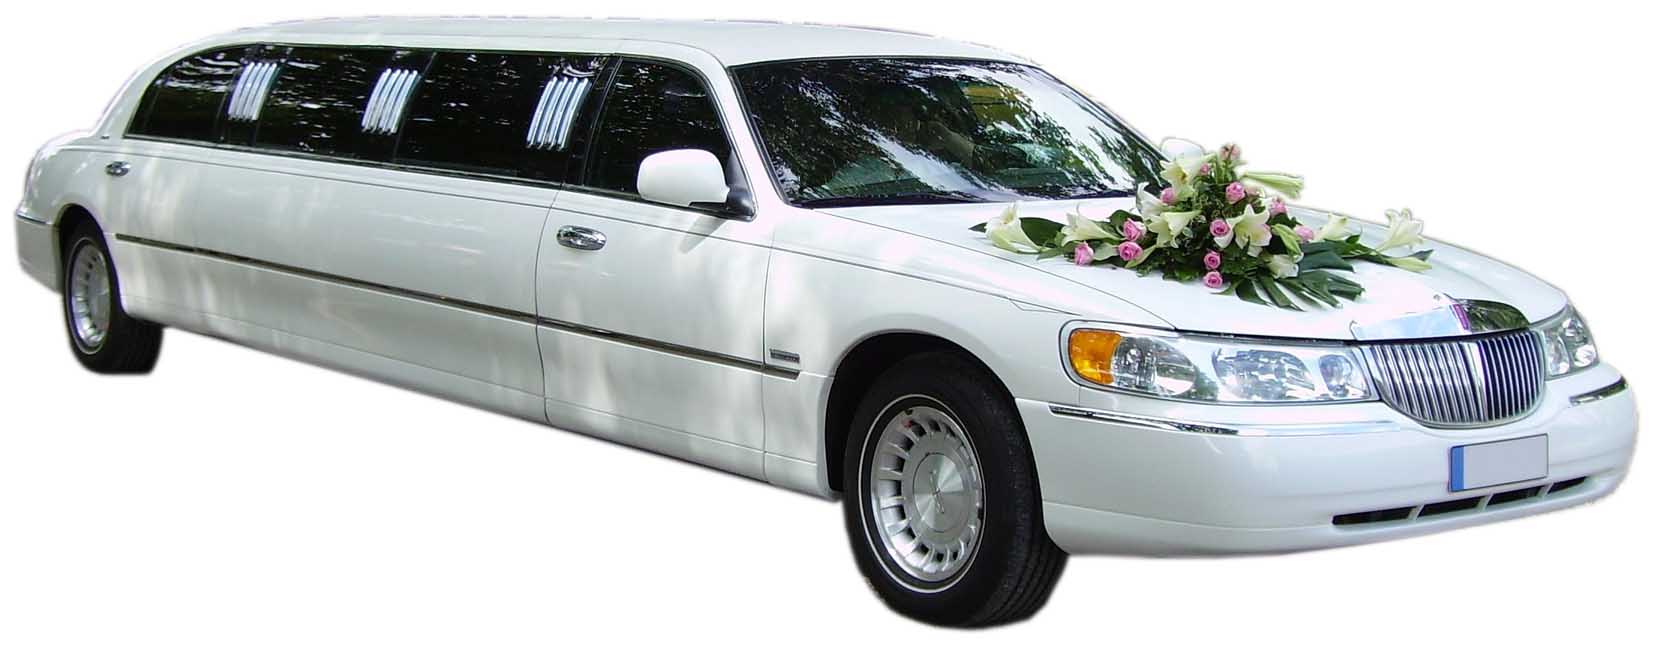 Свадебный лимузин на прозрачном фоне